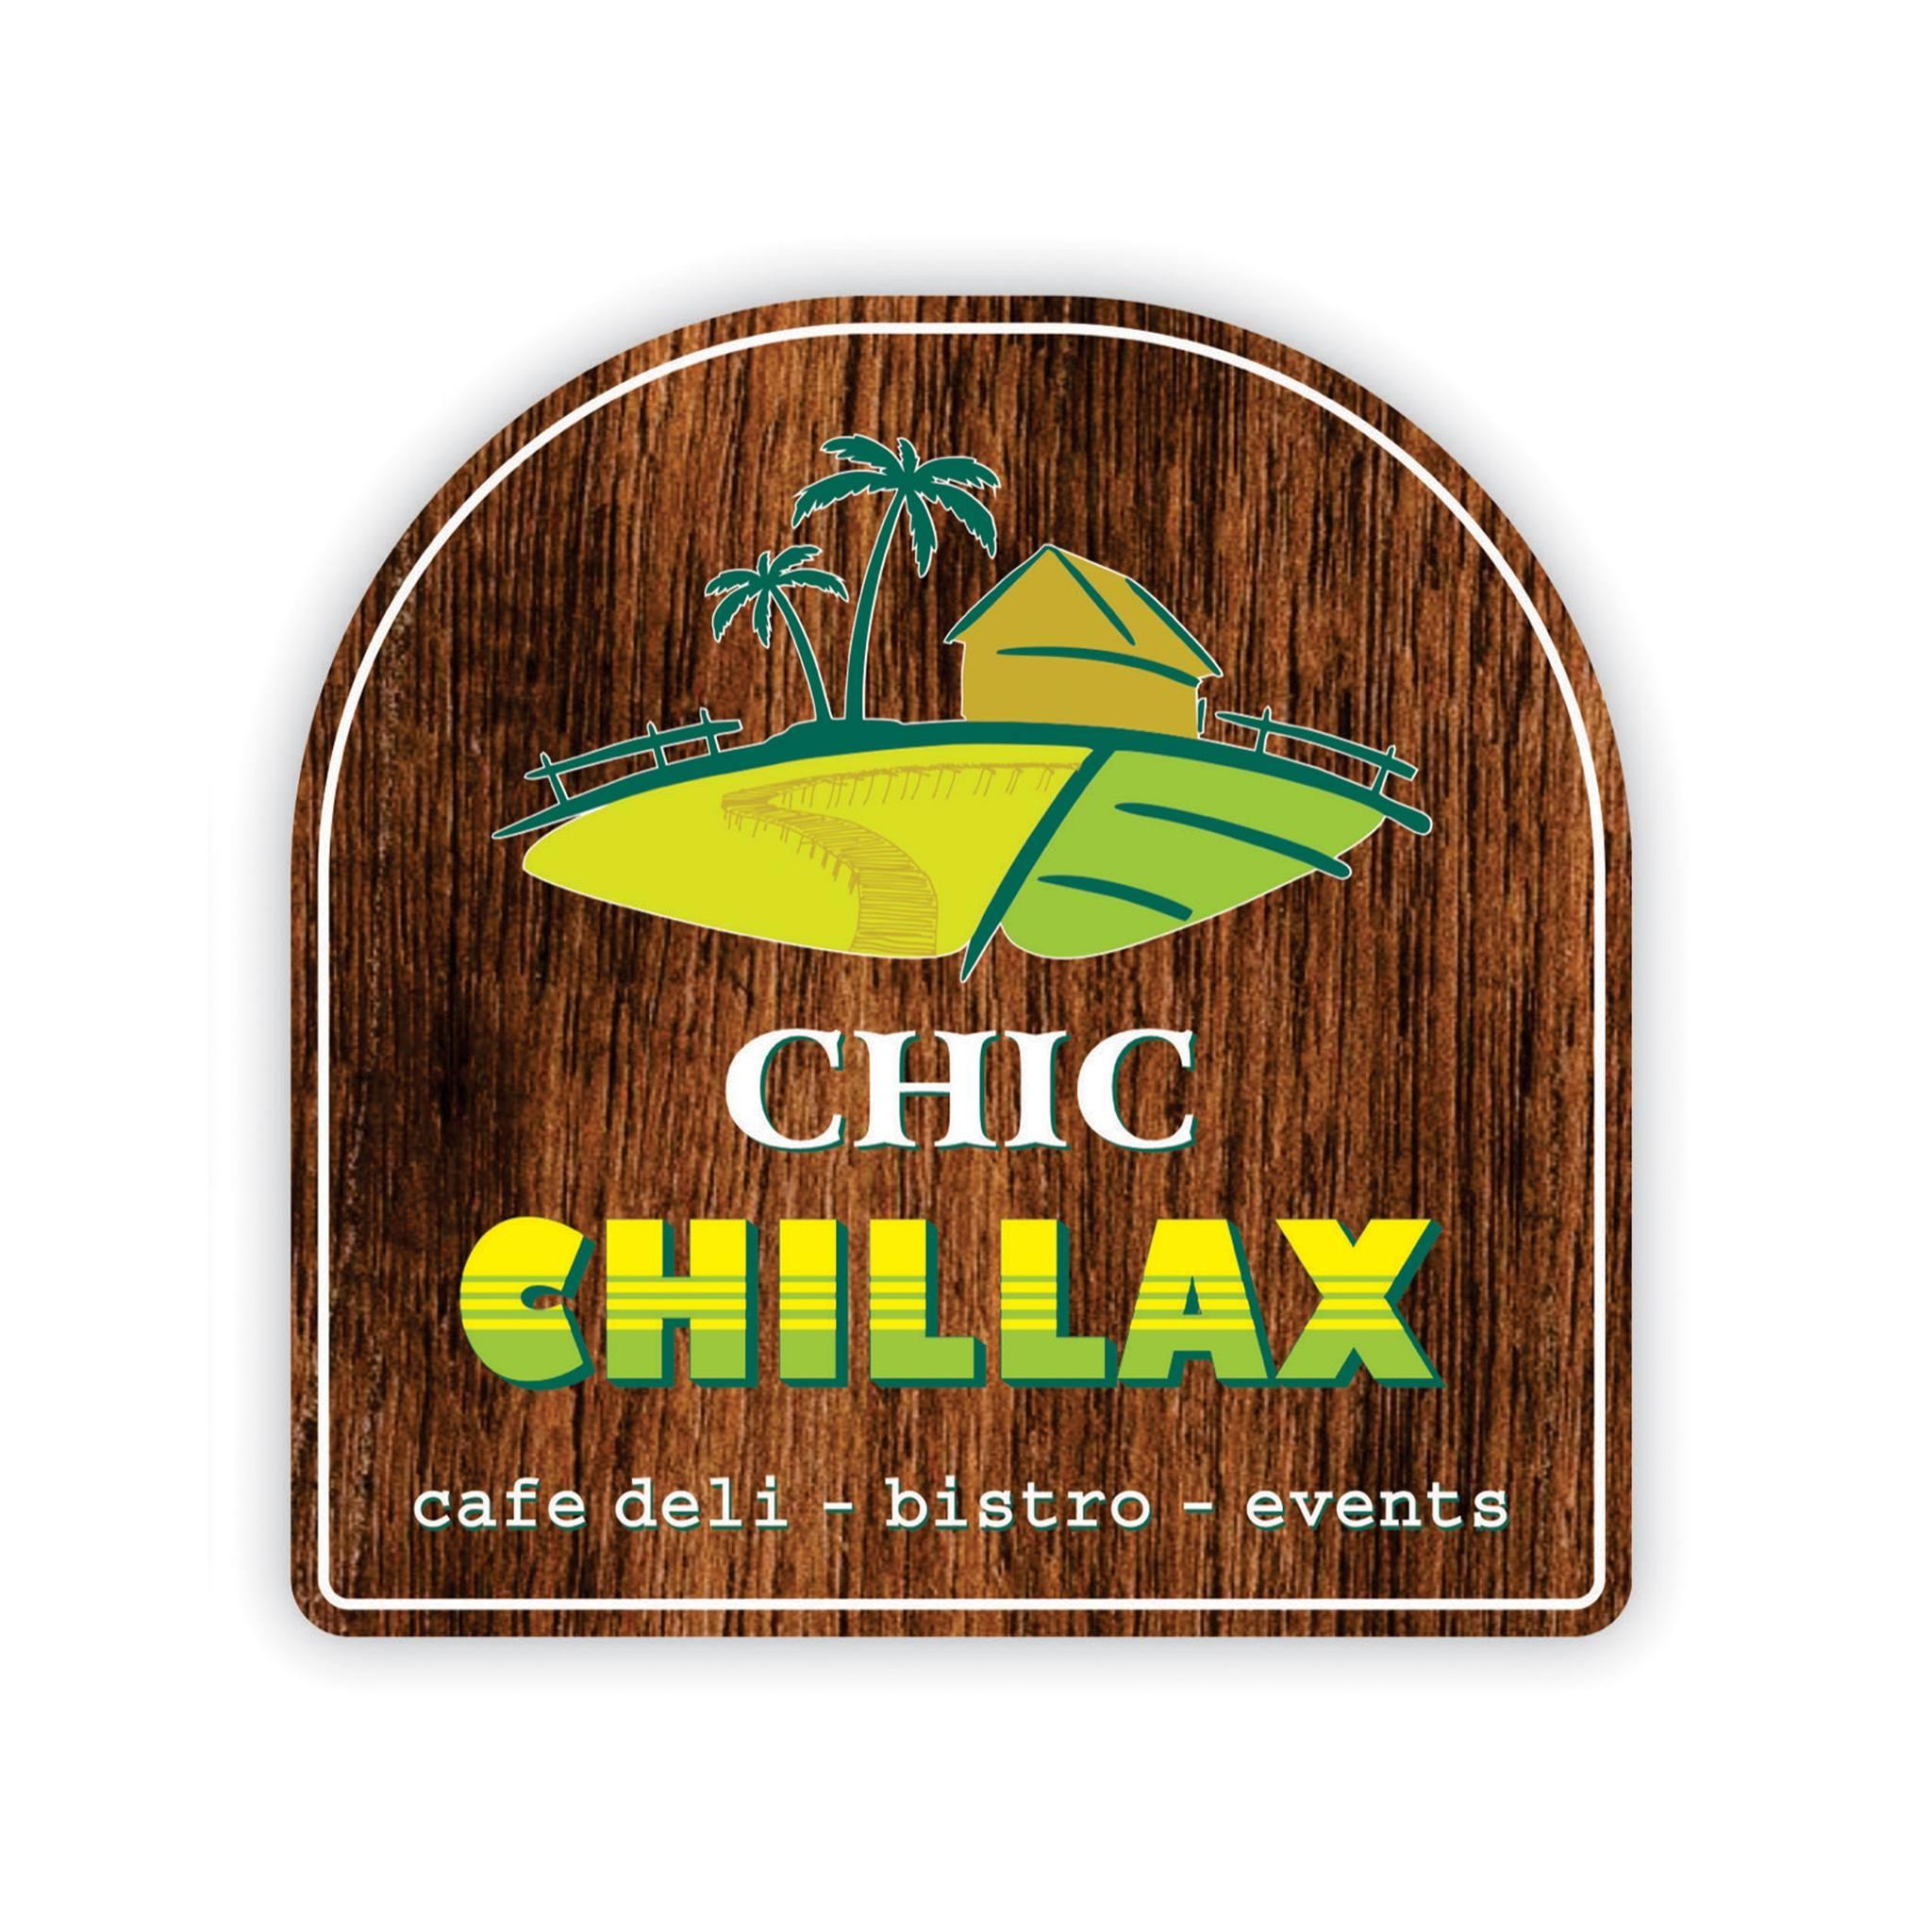 Chic Chillax (Cafe deli – Bistro – Events)